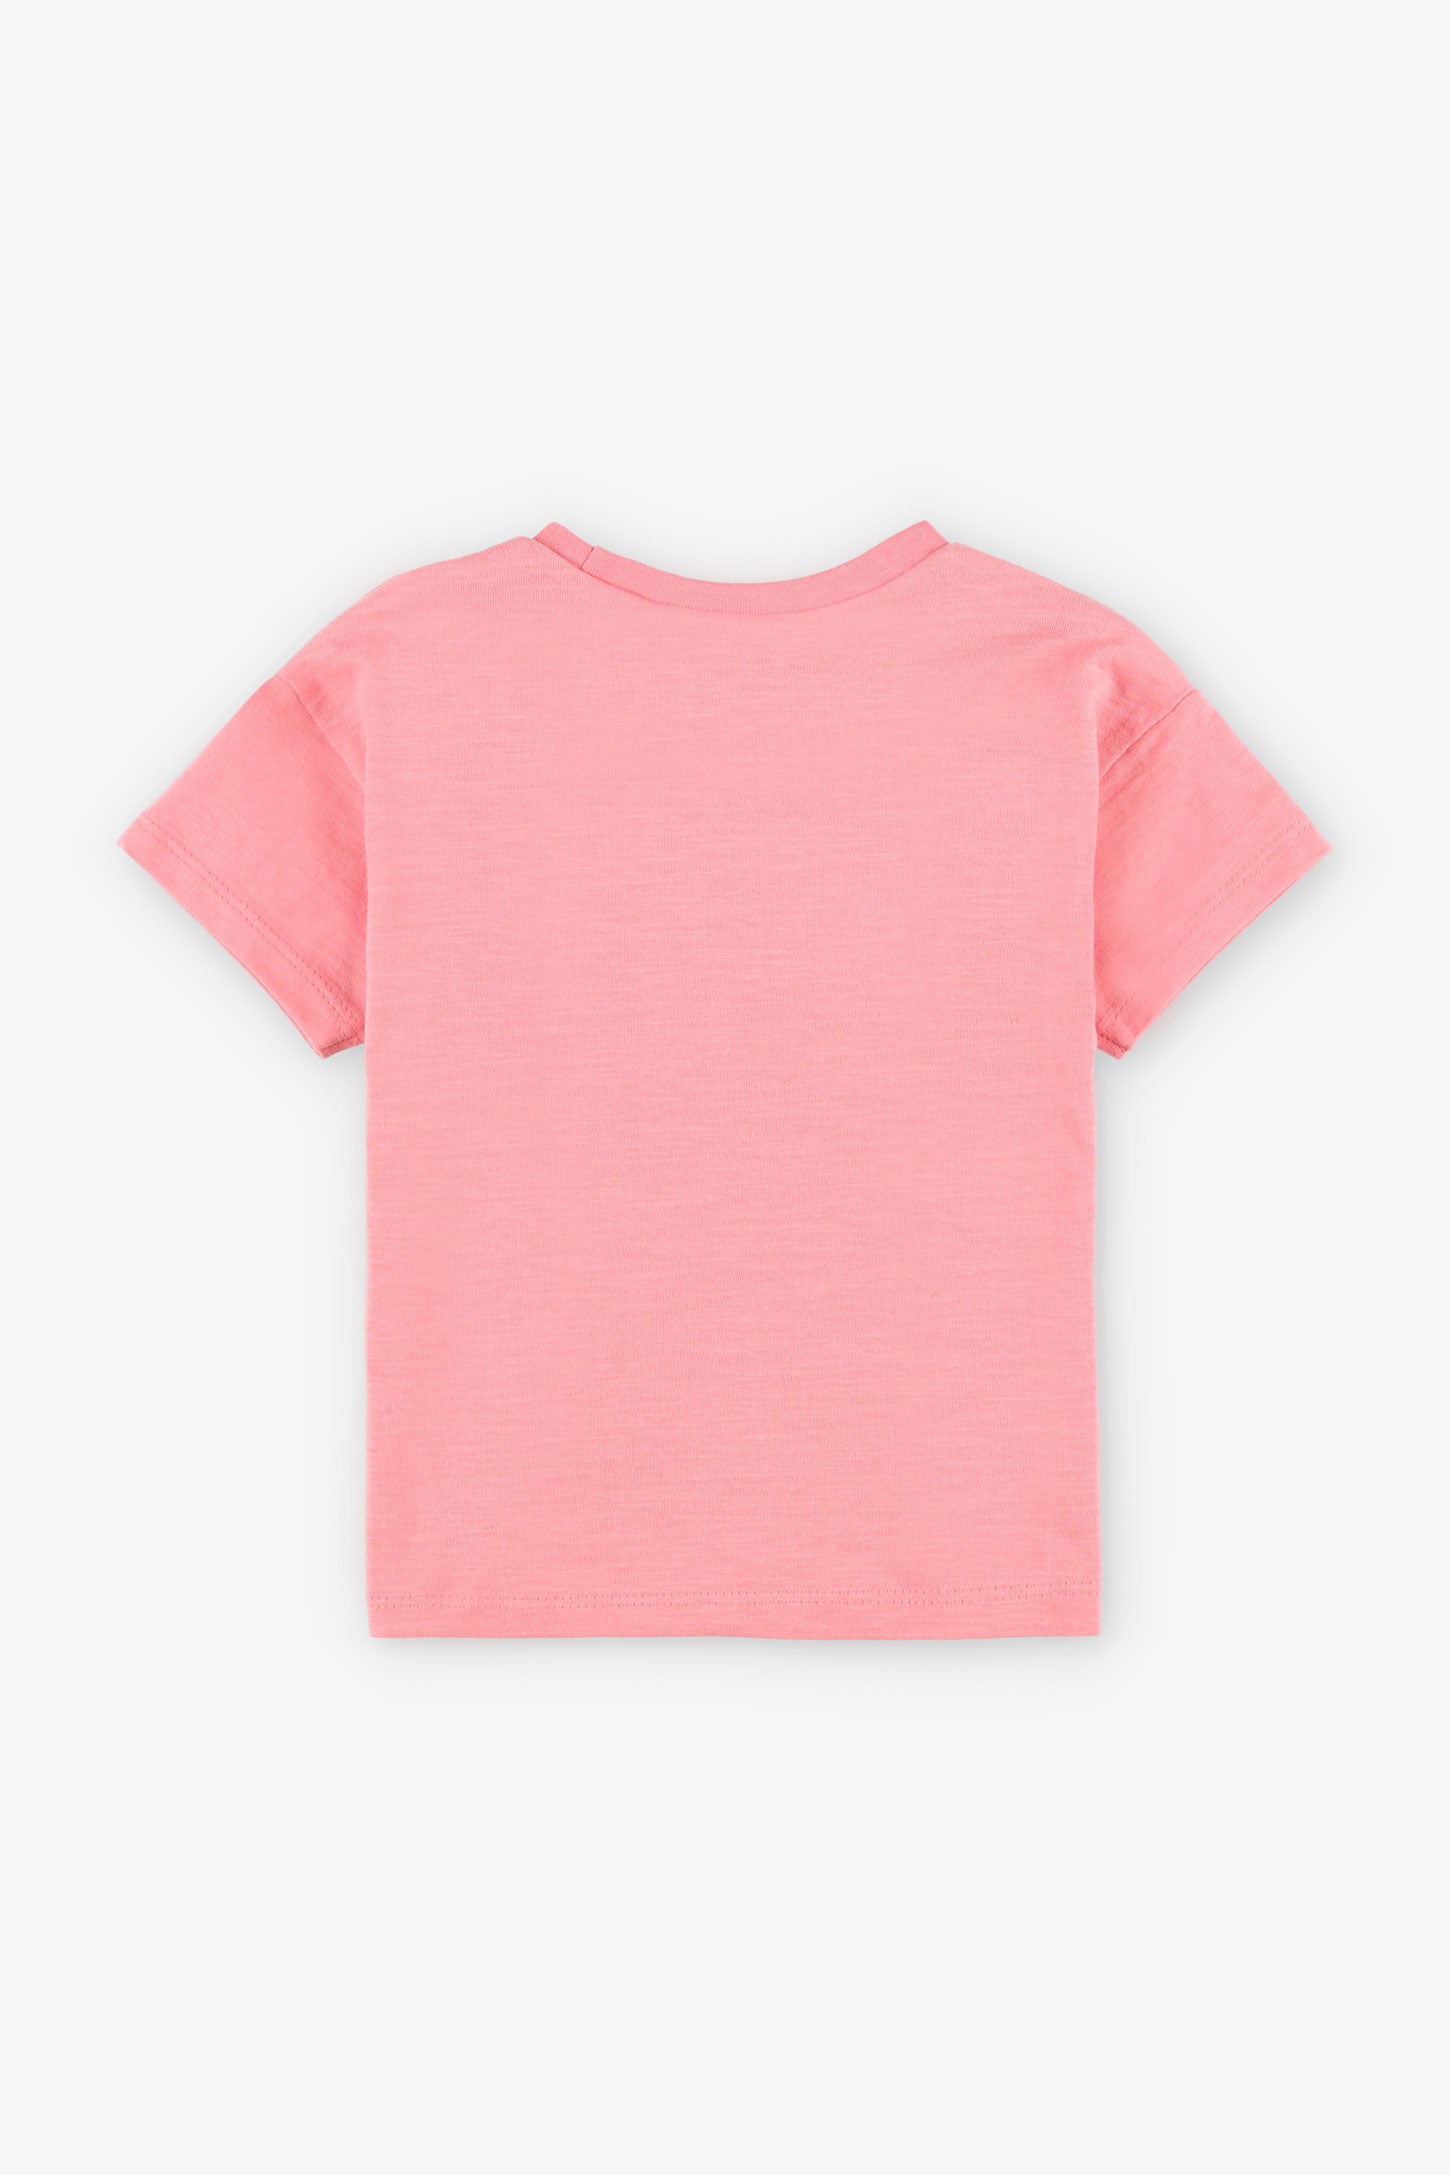 T-shirt coupe ample en coton, 2T-3T, 2/15$ - Bébé fille && ROSE